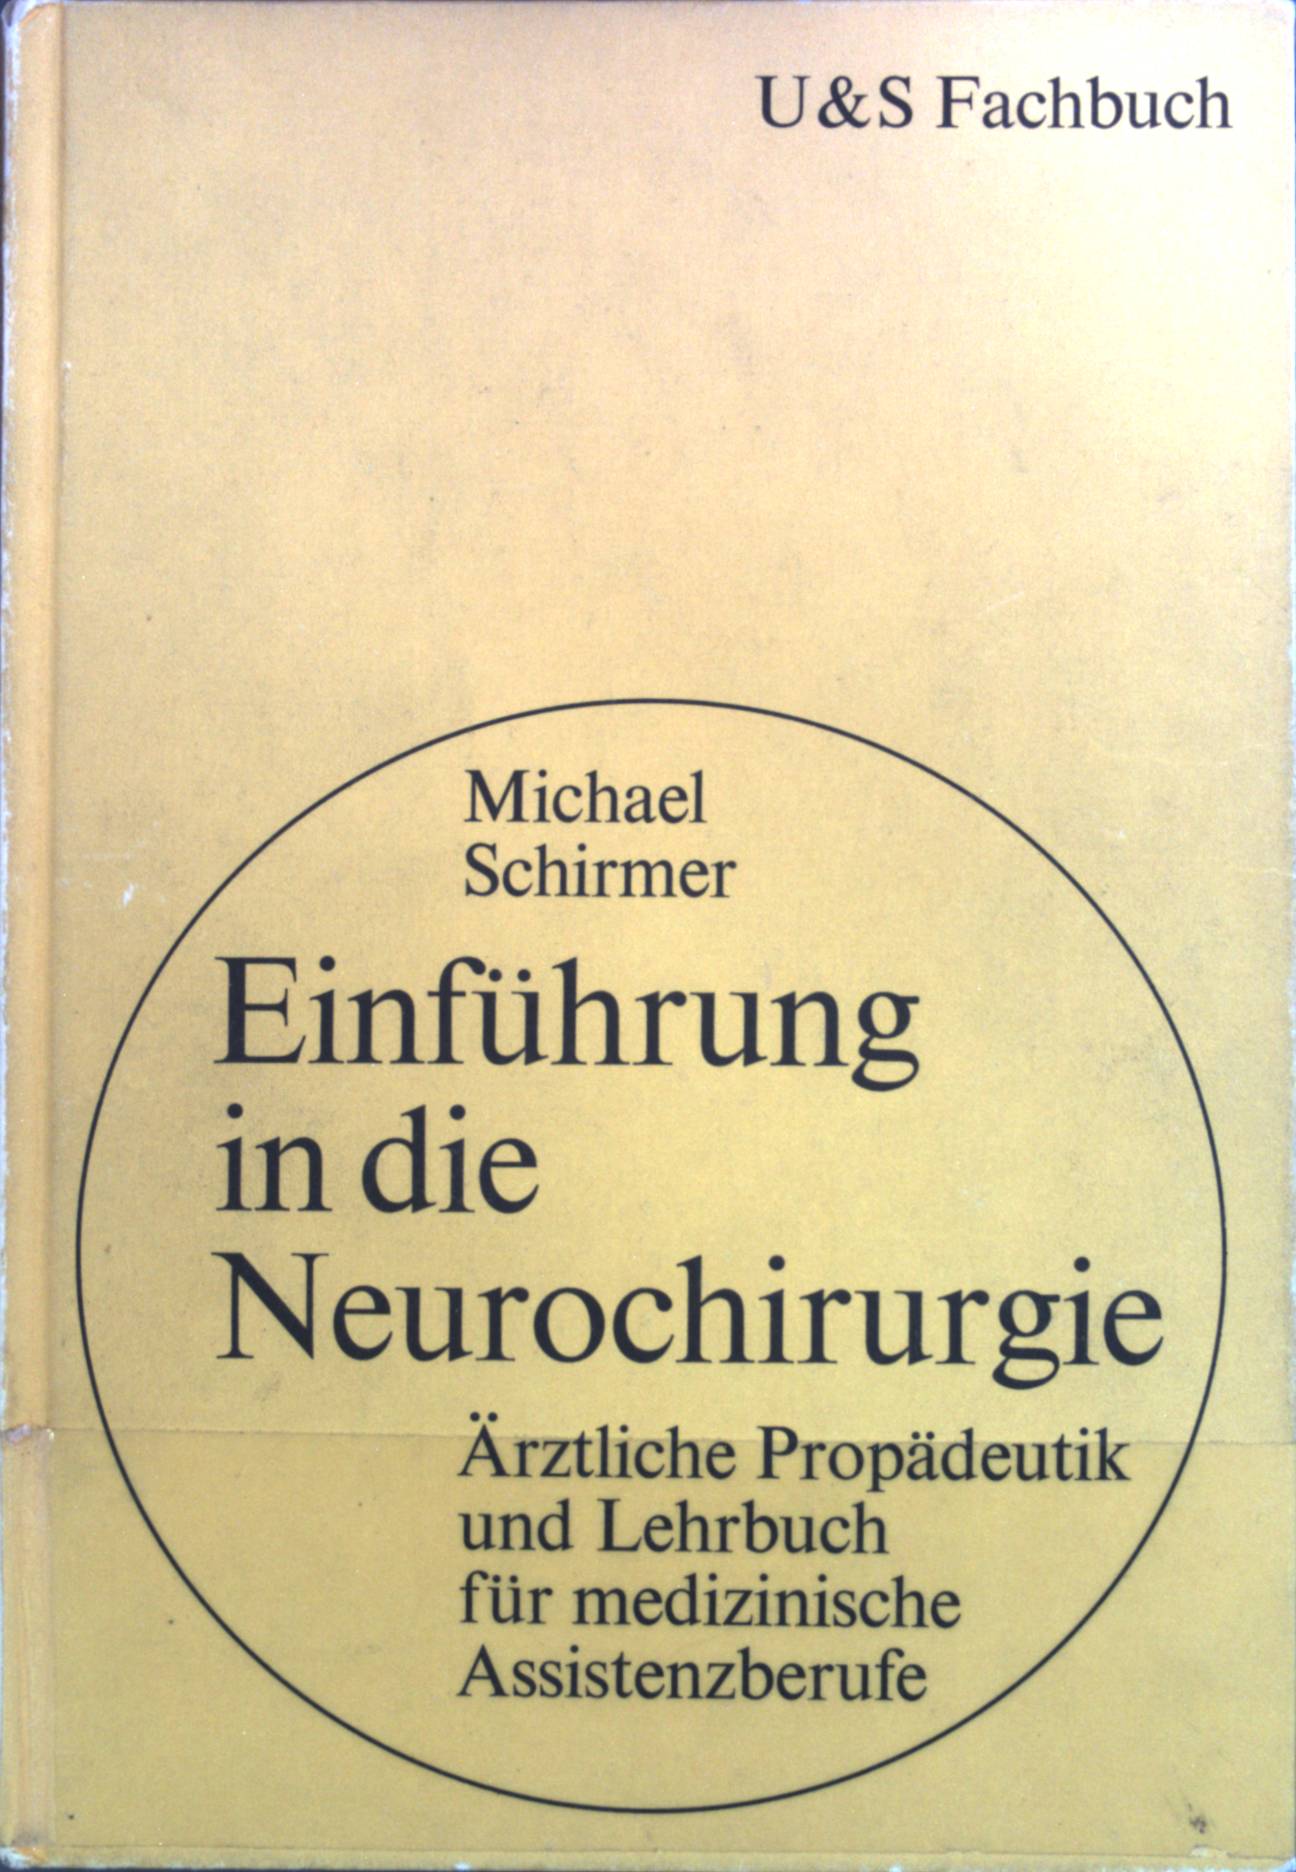 Einführung in die Neurochirurgie : Ärztliche Propädeutik und Lehrbuch für medizinische Assistenzberufe. U&S Fachbuch - Schirmer, Michael